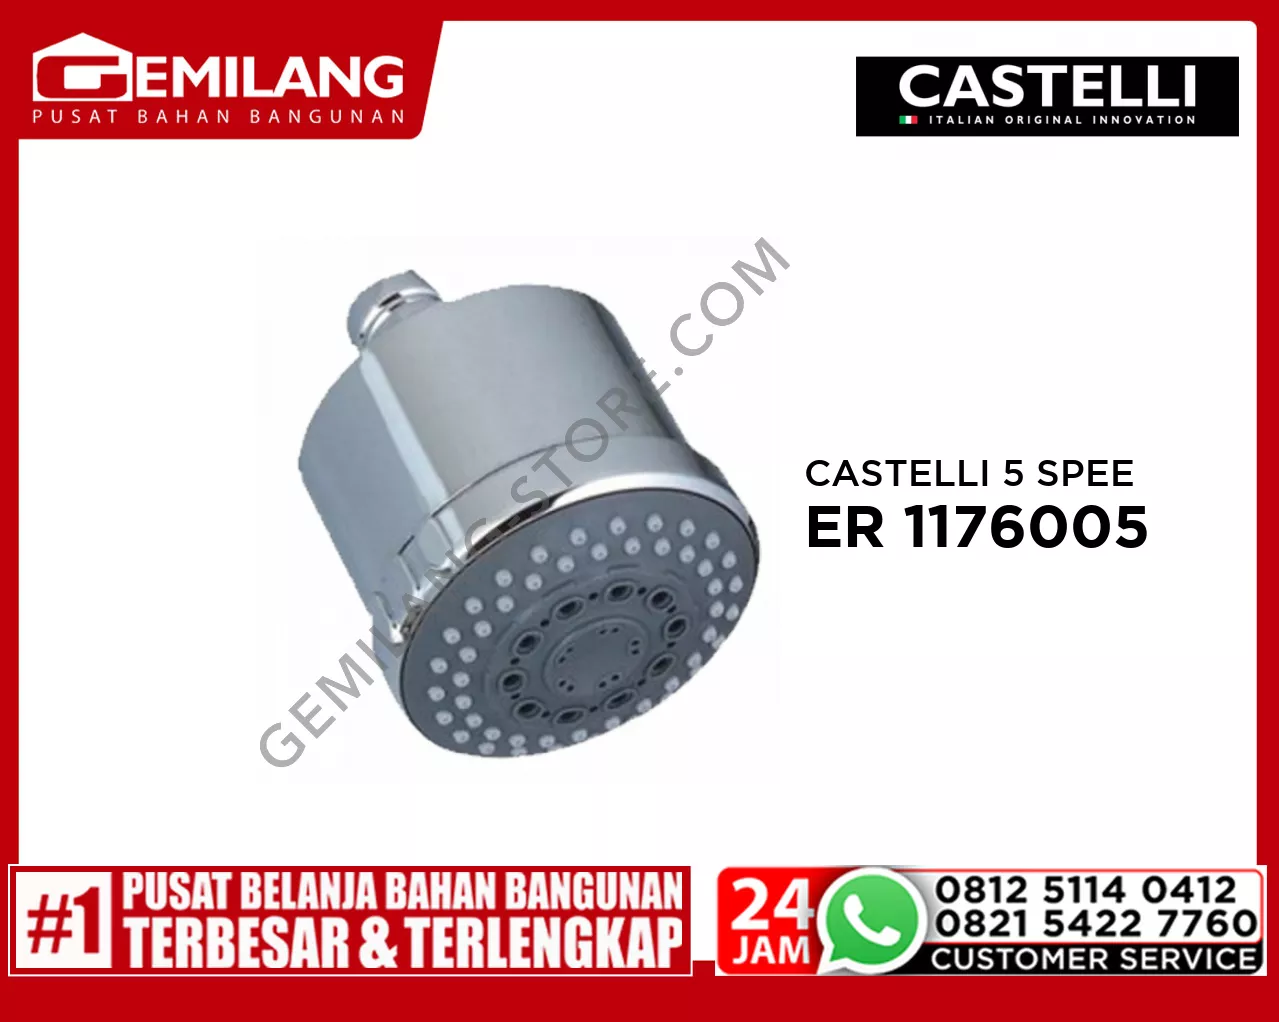 CASTELLI 5 SPEED HEAD SHOWER 1176005